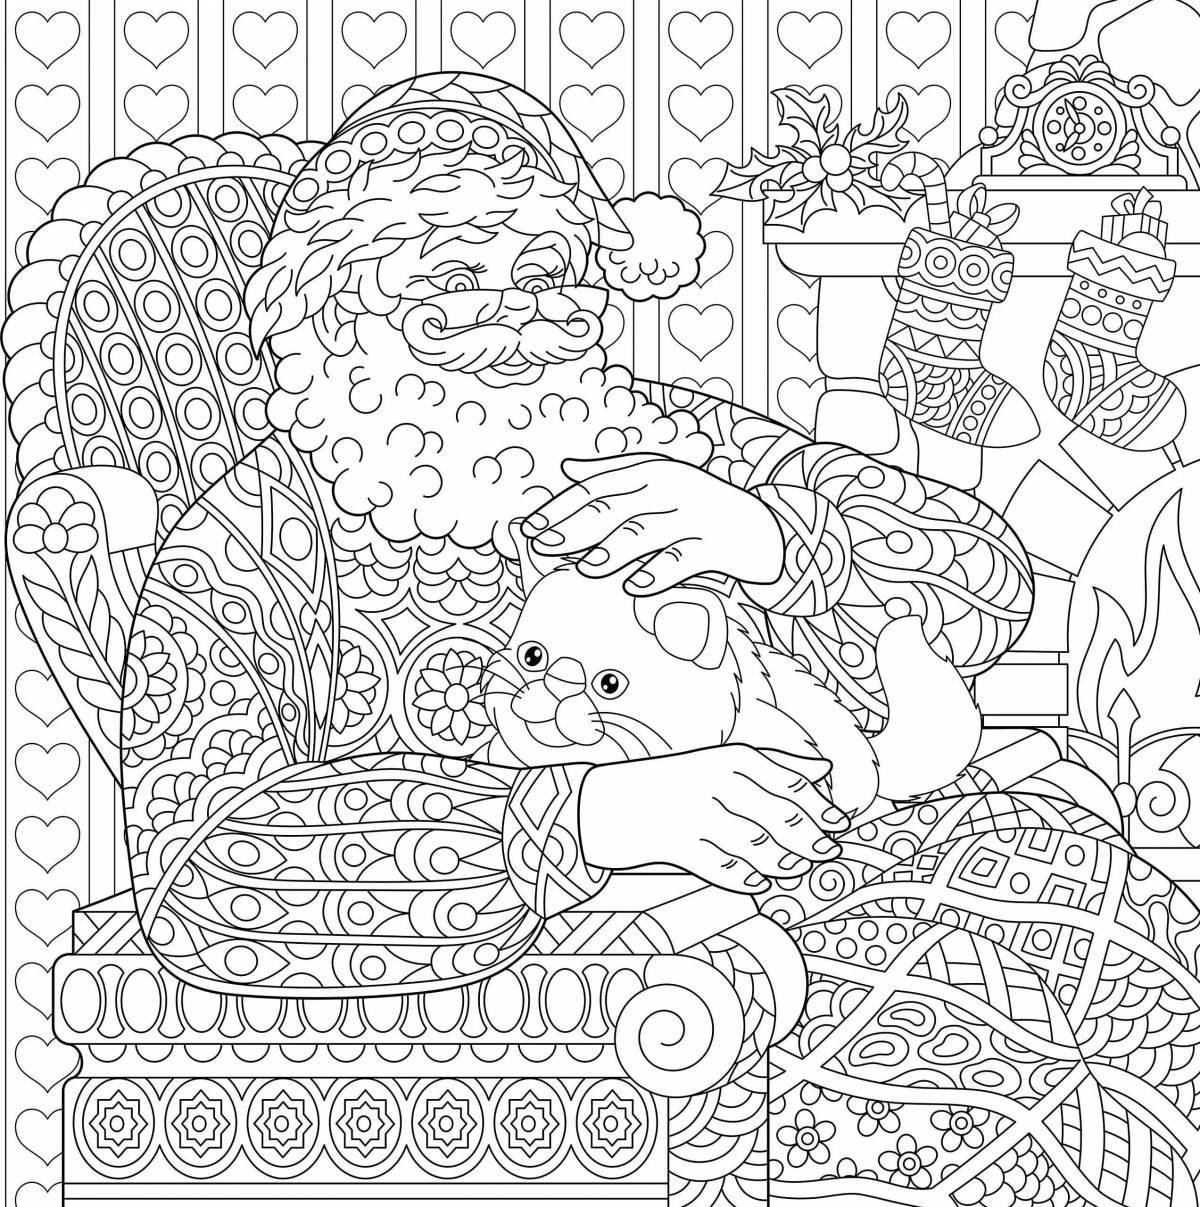 Soulful santa claus coloring book